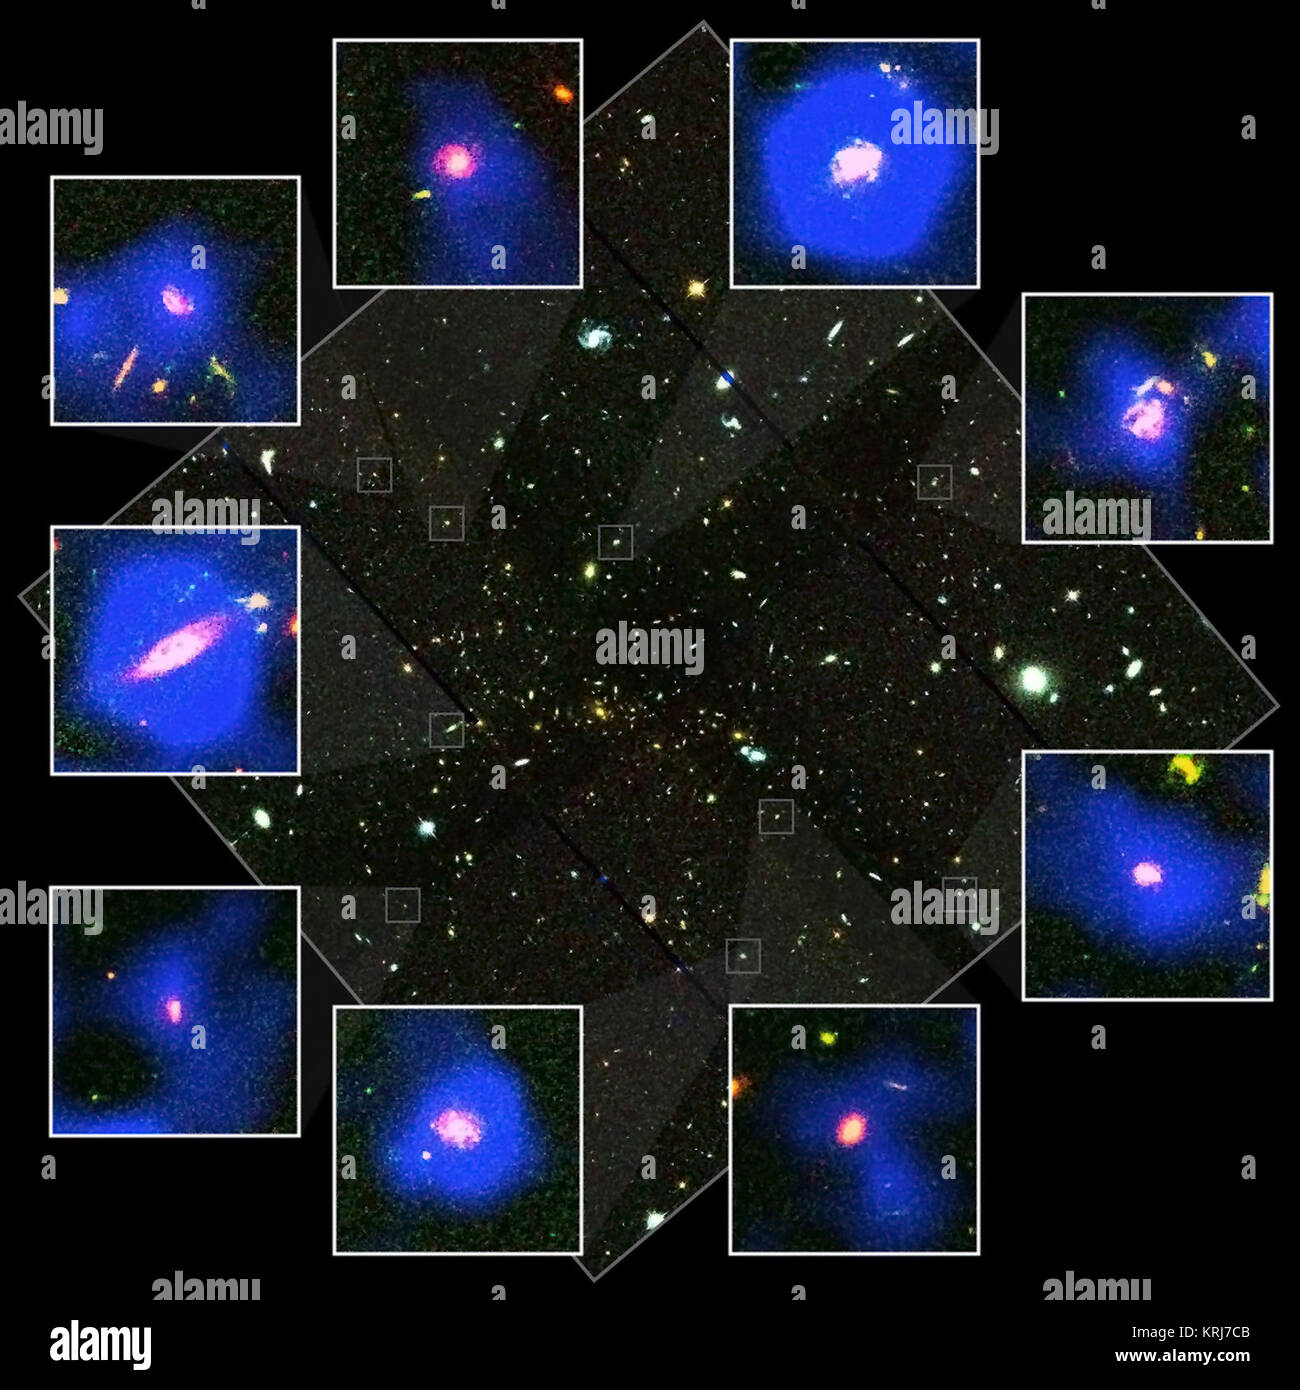 Eine Hubble Space Telescope Snapshot von Galaxienhaufen MS 1054 ist in der Mitte des Bildes, mit einzelnen Galaxien durch das Spitzer Space Telescope beschmutzt werden an der Seite in die markierten Bilder. Fetzen von Blau zeigen Infrarot-Emission bei der Entstehung von Sternen. Collage von Hubble und Spitzer Bilder von Galaxienhaufen MS 1054 Stockfoto